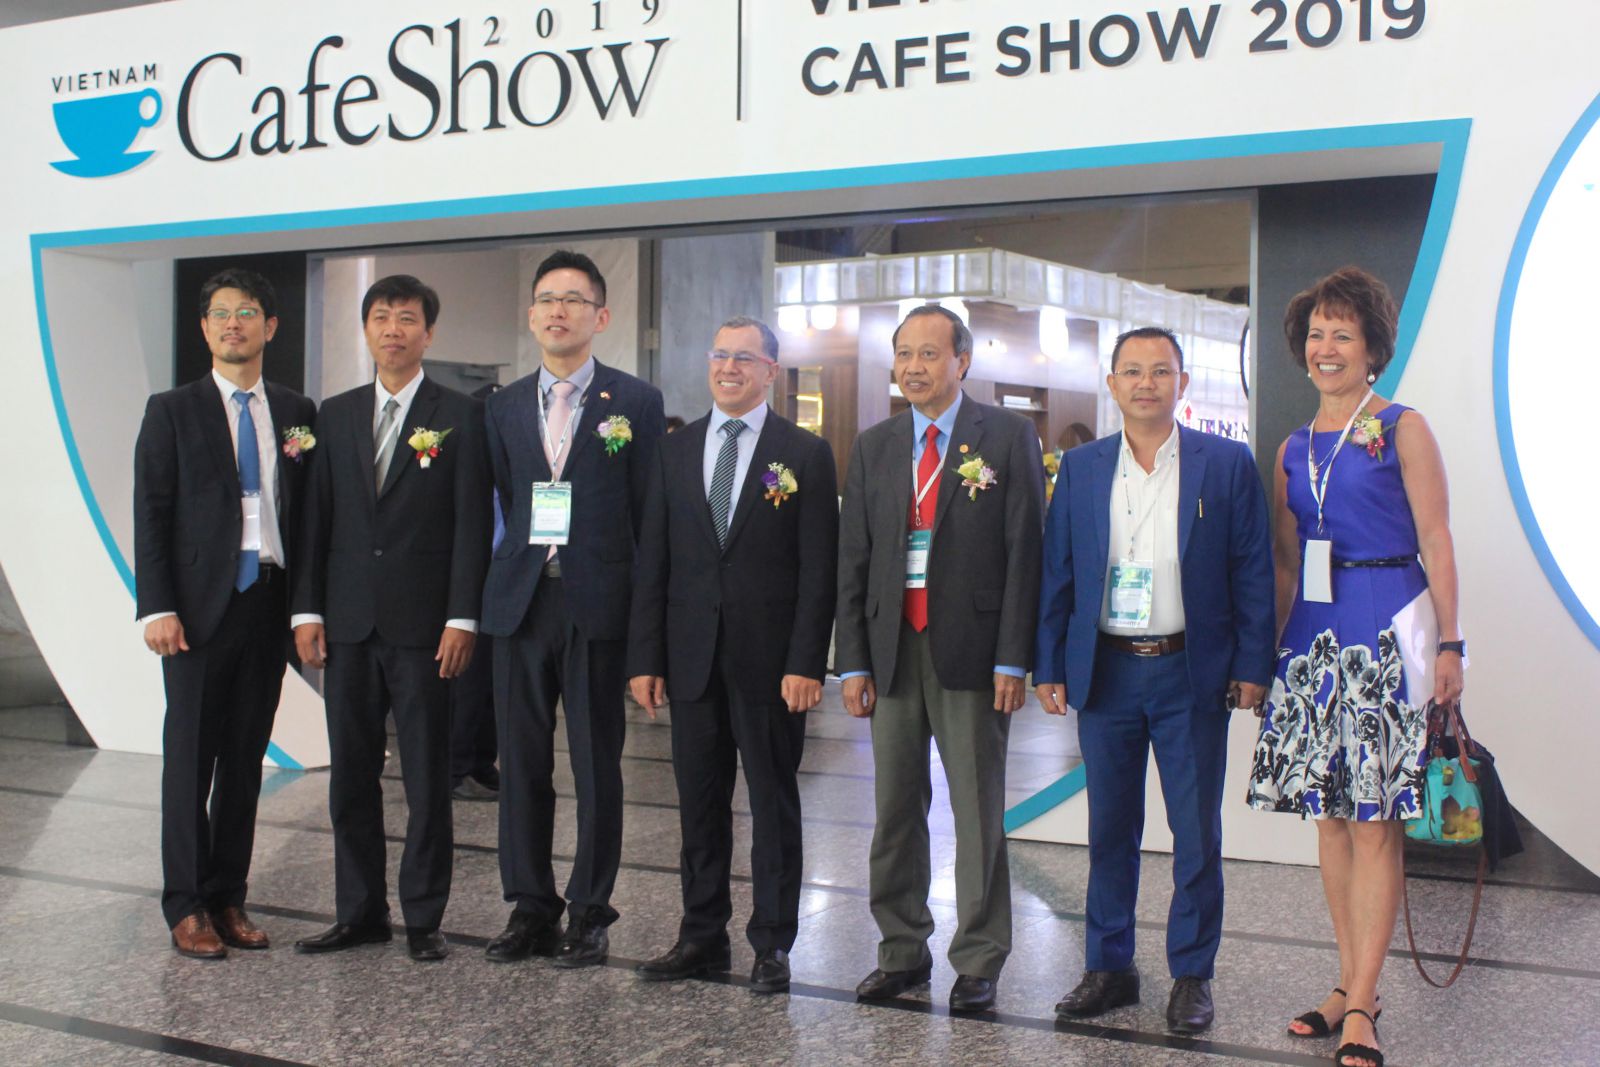 Ông Hoàng Văn Thủy  - Chủ tịch HĐQT kiêm Tổng Giám đốc công ty CP Đại Hoàng Thủy (vest xanh) chụp hình lưu niệm cùng BTC triển lãm Café Show Vietnam 2019